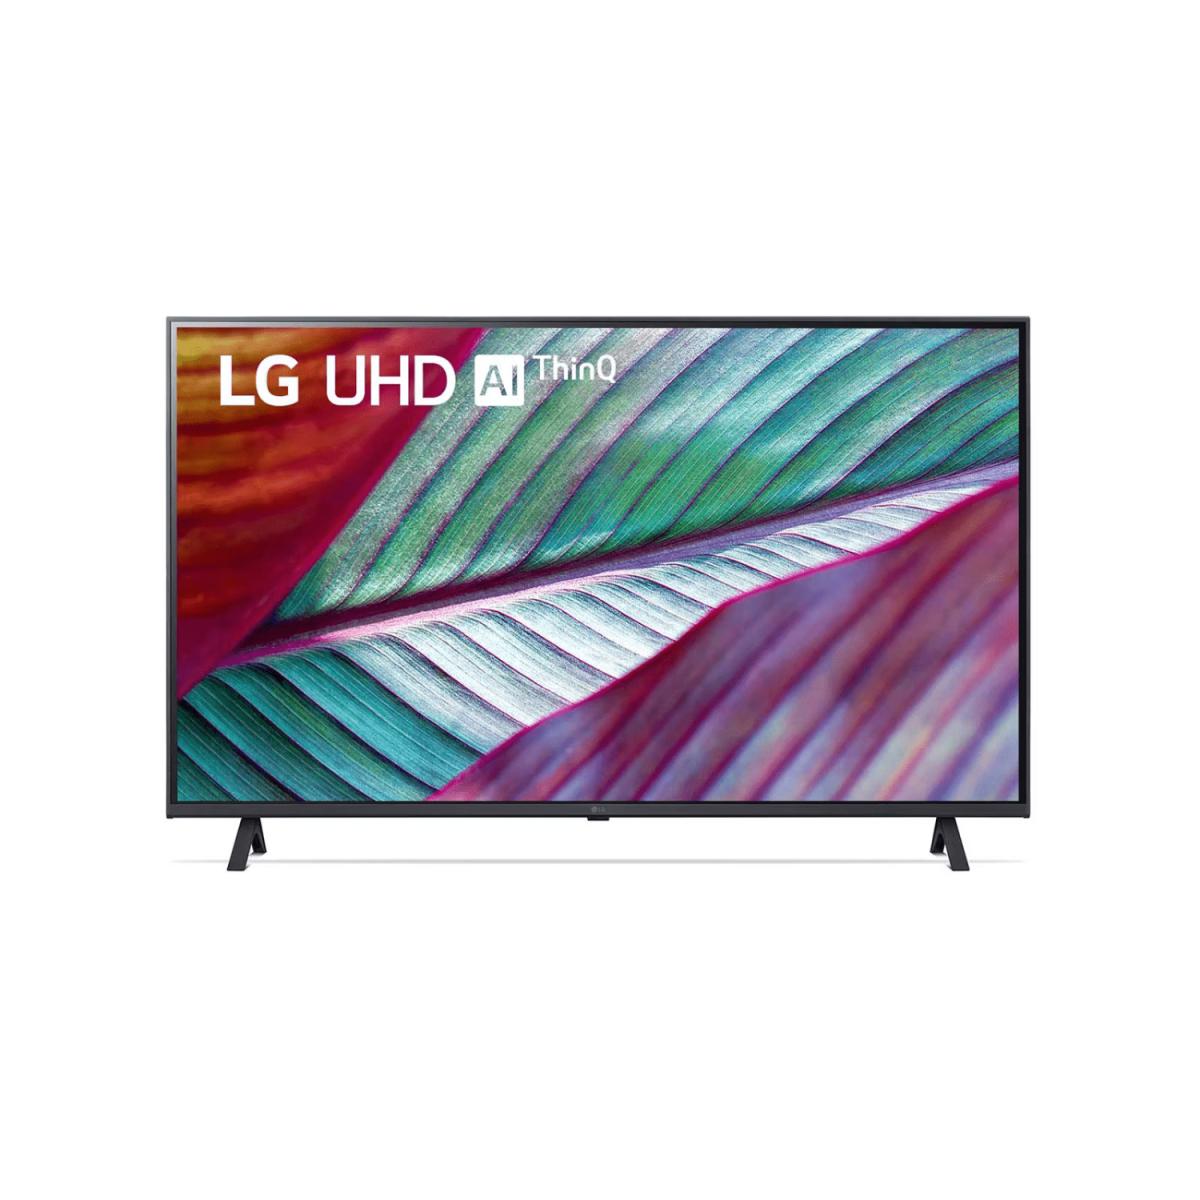 TV LG LED 50" SMART AI THINQ 4K